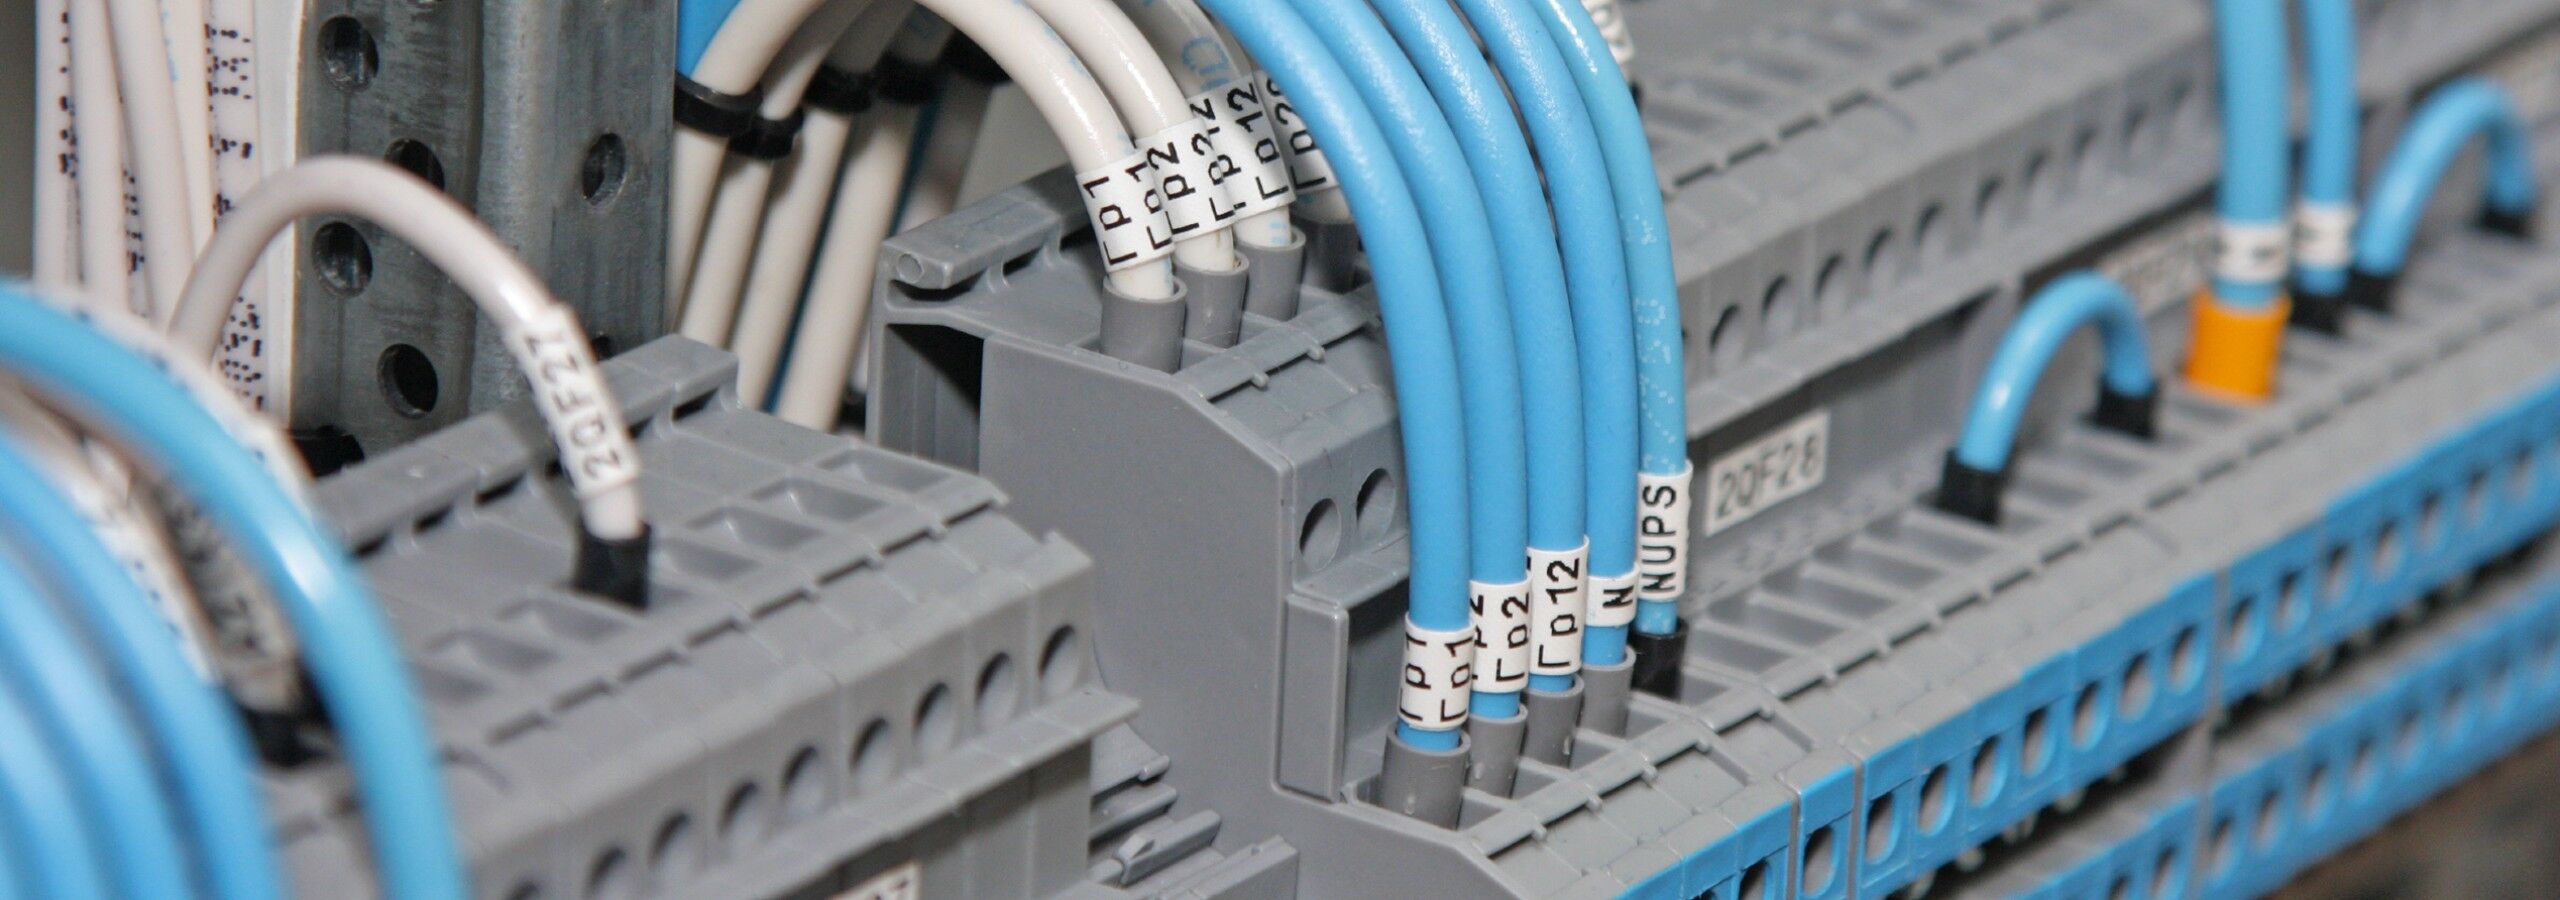 Markering van elektrische draden stopcontacten | componenten. Distributeur en online winkel - Multisort Elektronik.